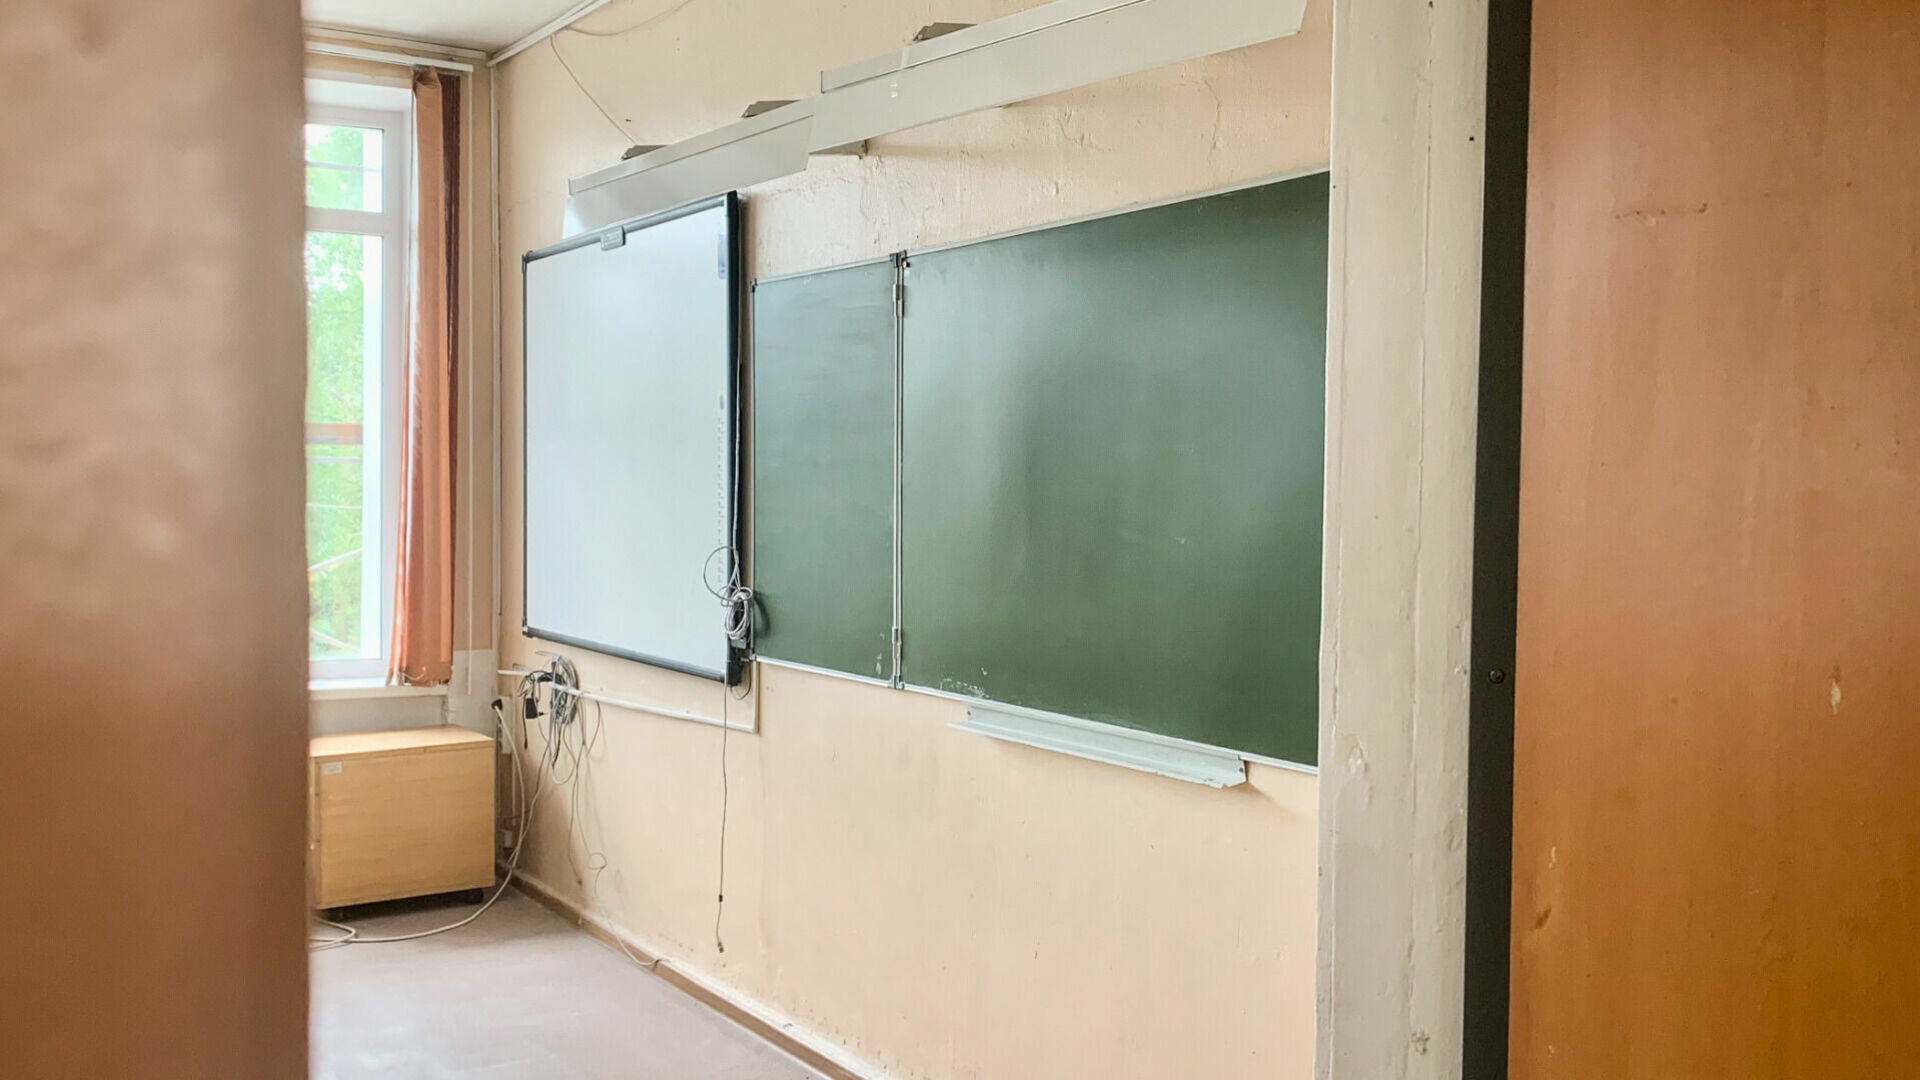 Учители Нефтеюганска обвинили департамент образования в давлении после ложного доноса